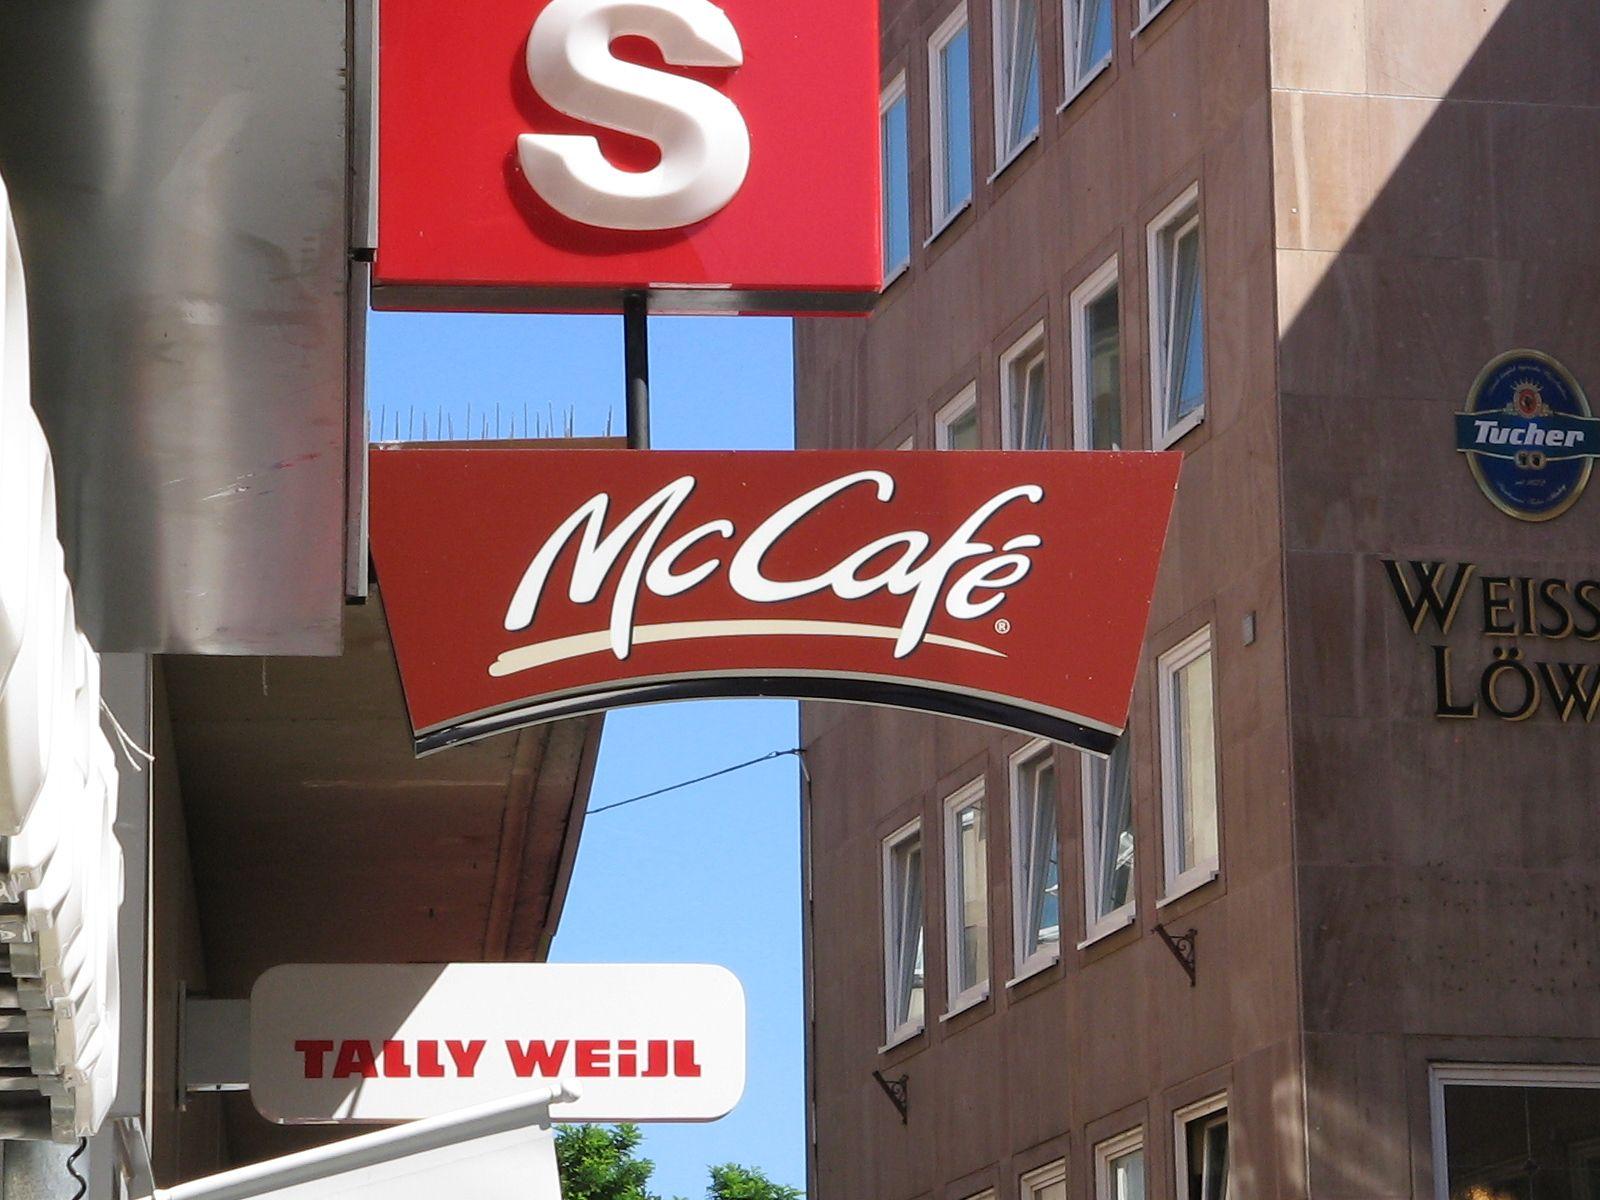 McCafe Logo - File:McCafe Logo.jpg - Wikimedia Commons